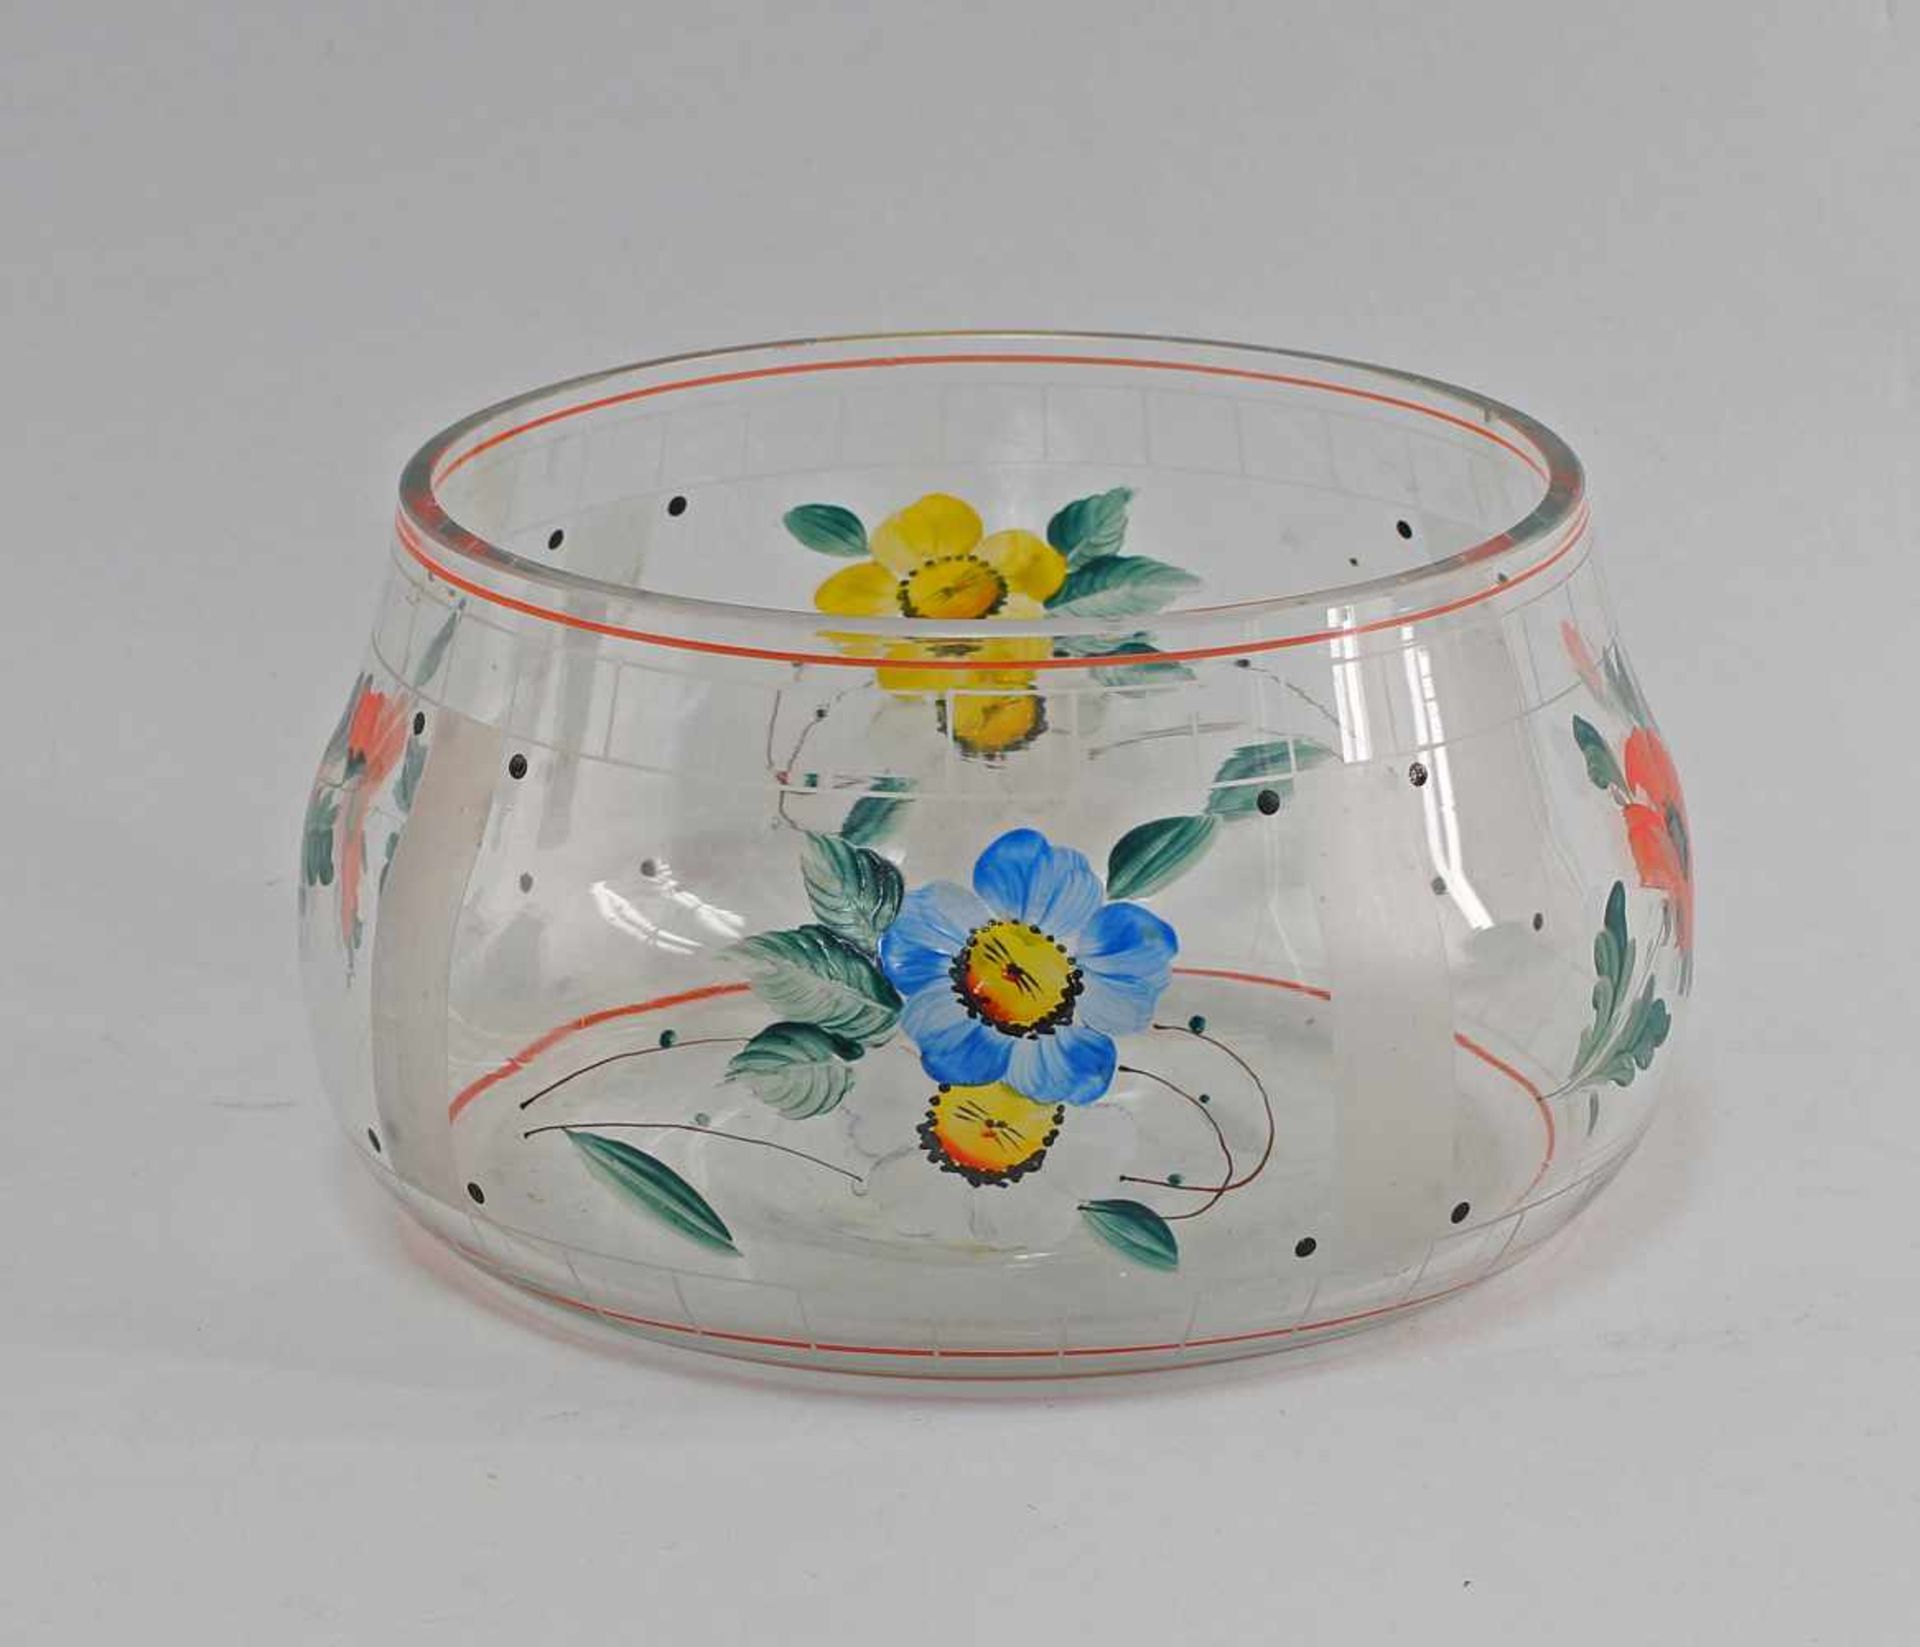 Bamalte Schale 40/60er Jahre, farbloses Glas formgeblasen, farbig bemalt mit Blumendekor, am - Bild 3 aus 3